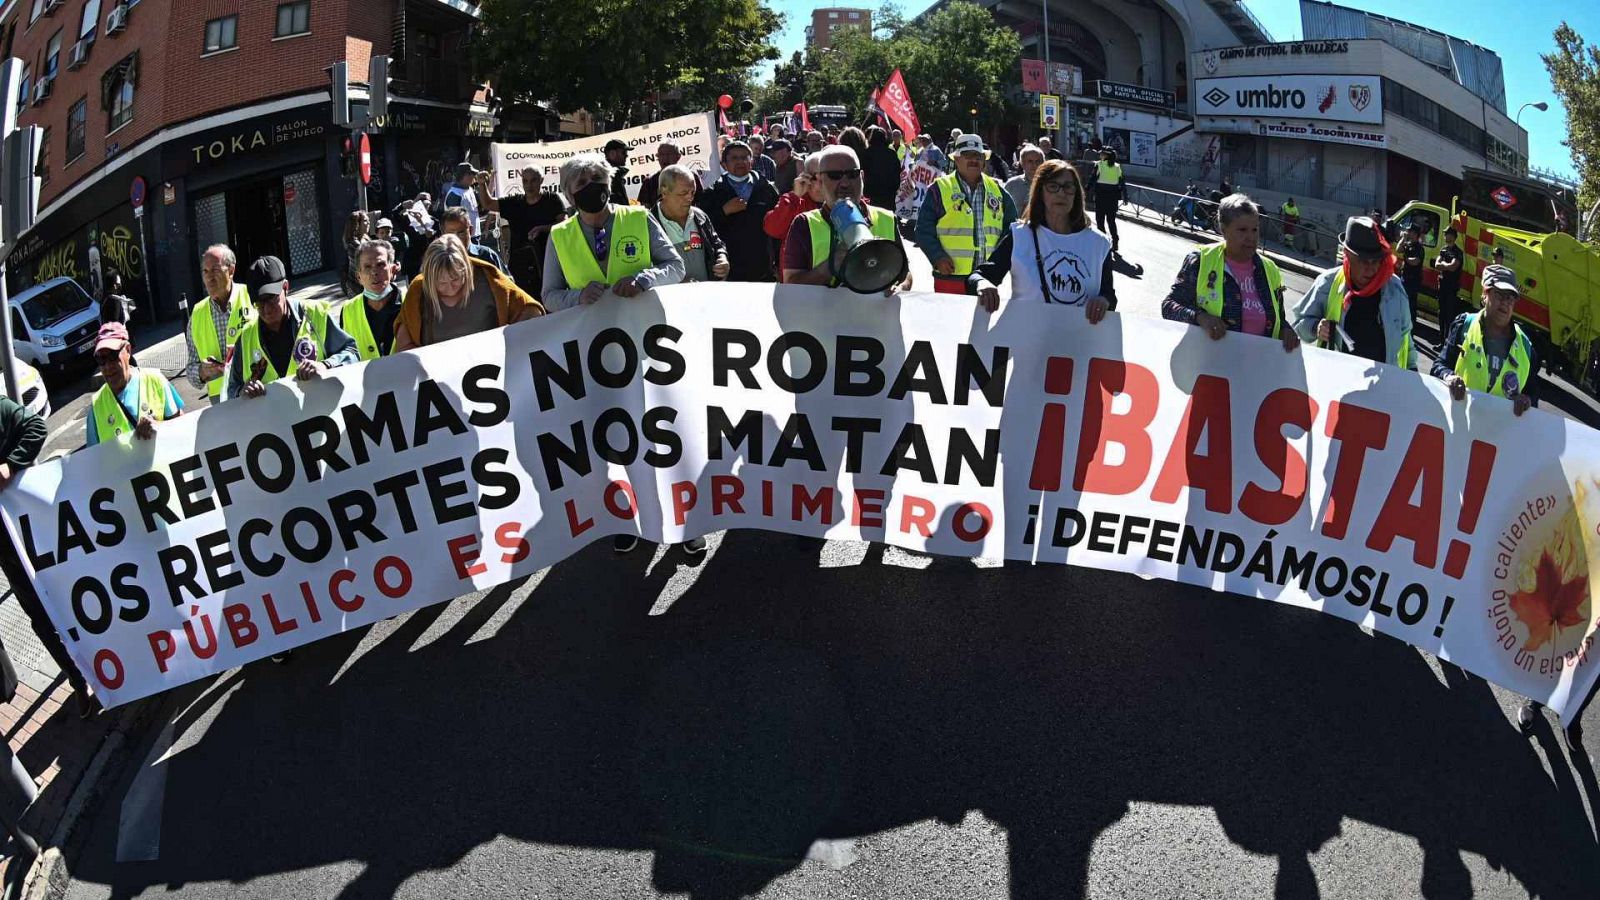 Manifestación de pensionistas en Madrid